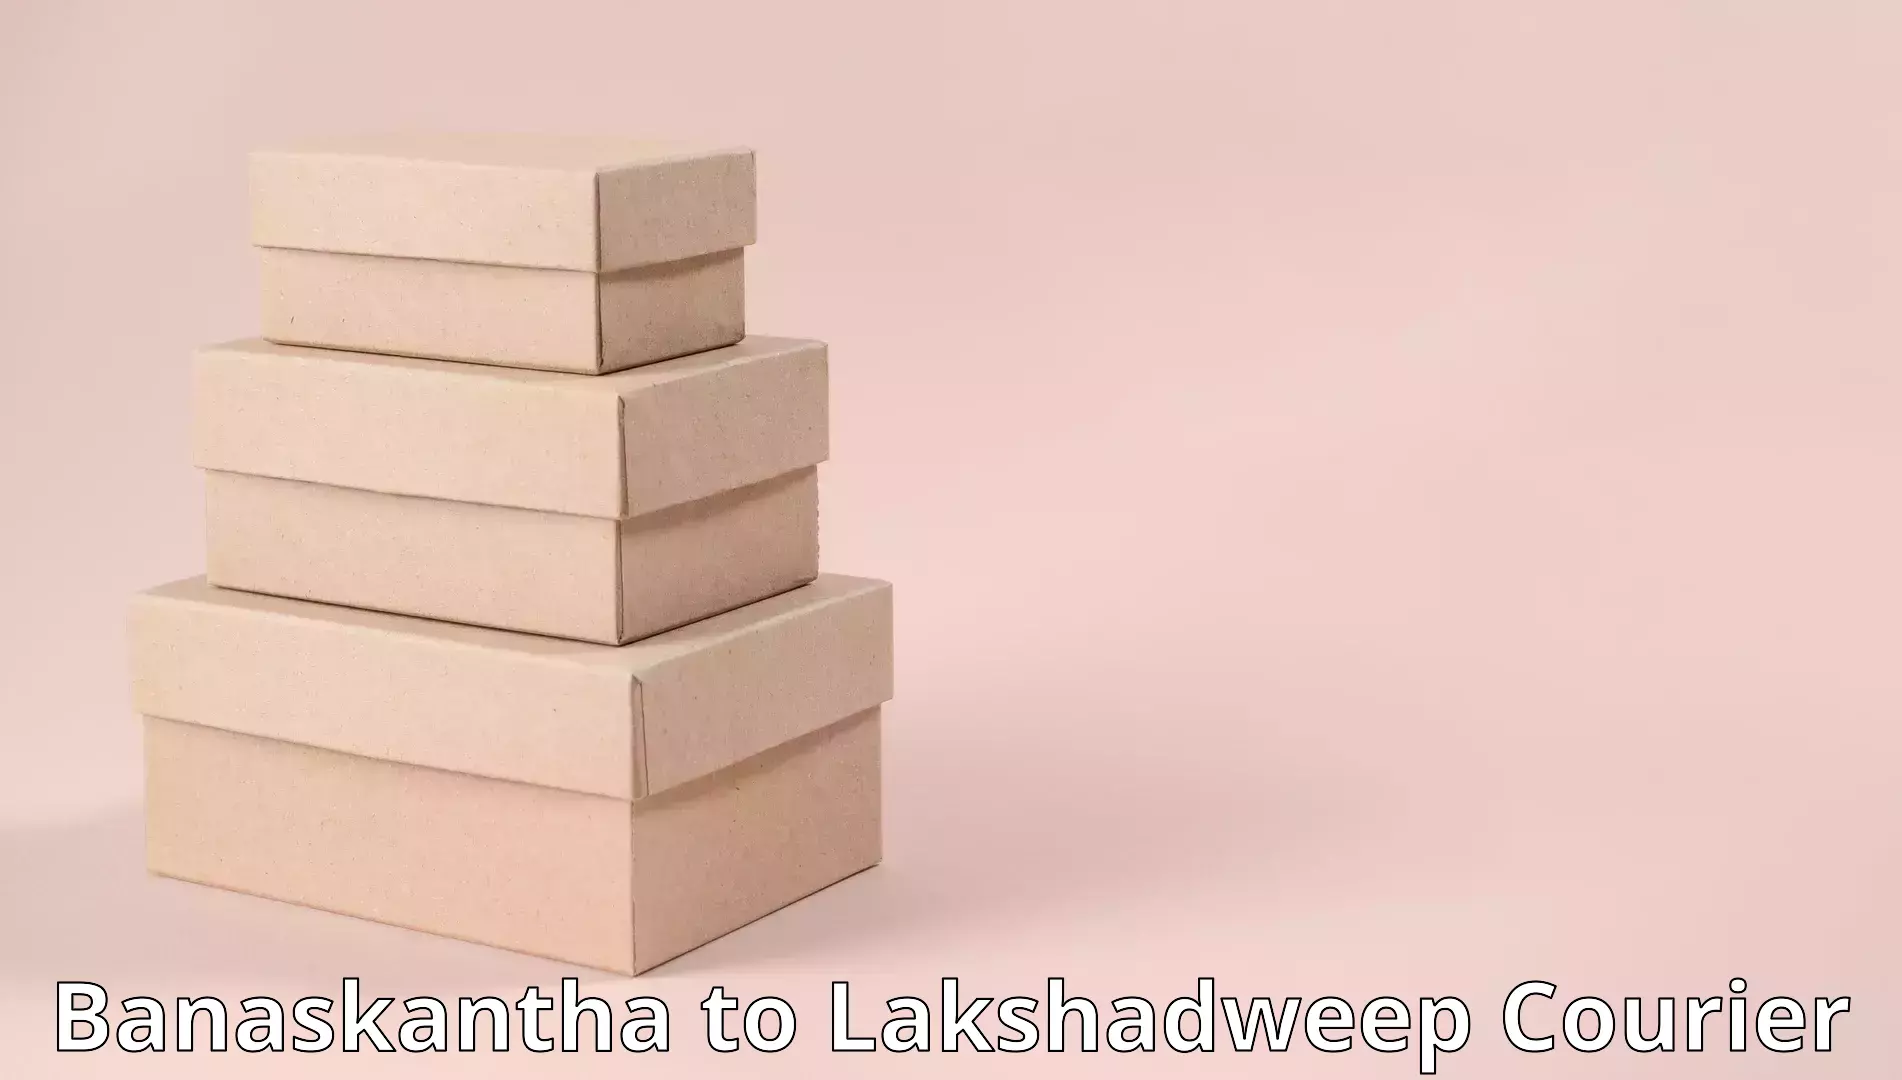 Seamless moving process in Banaskantha to Lakshadweep